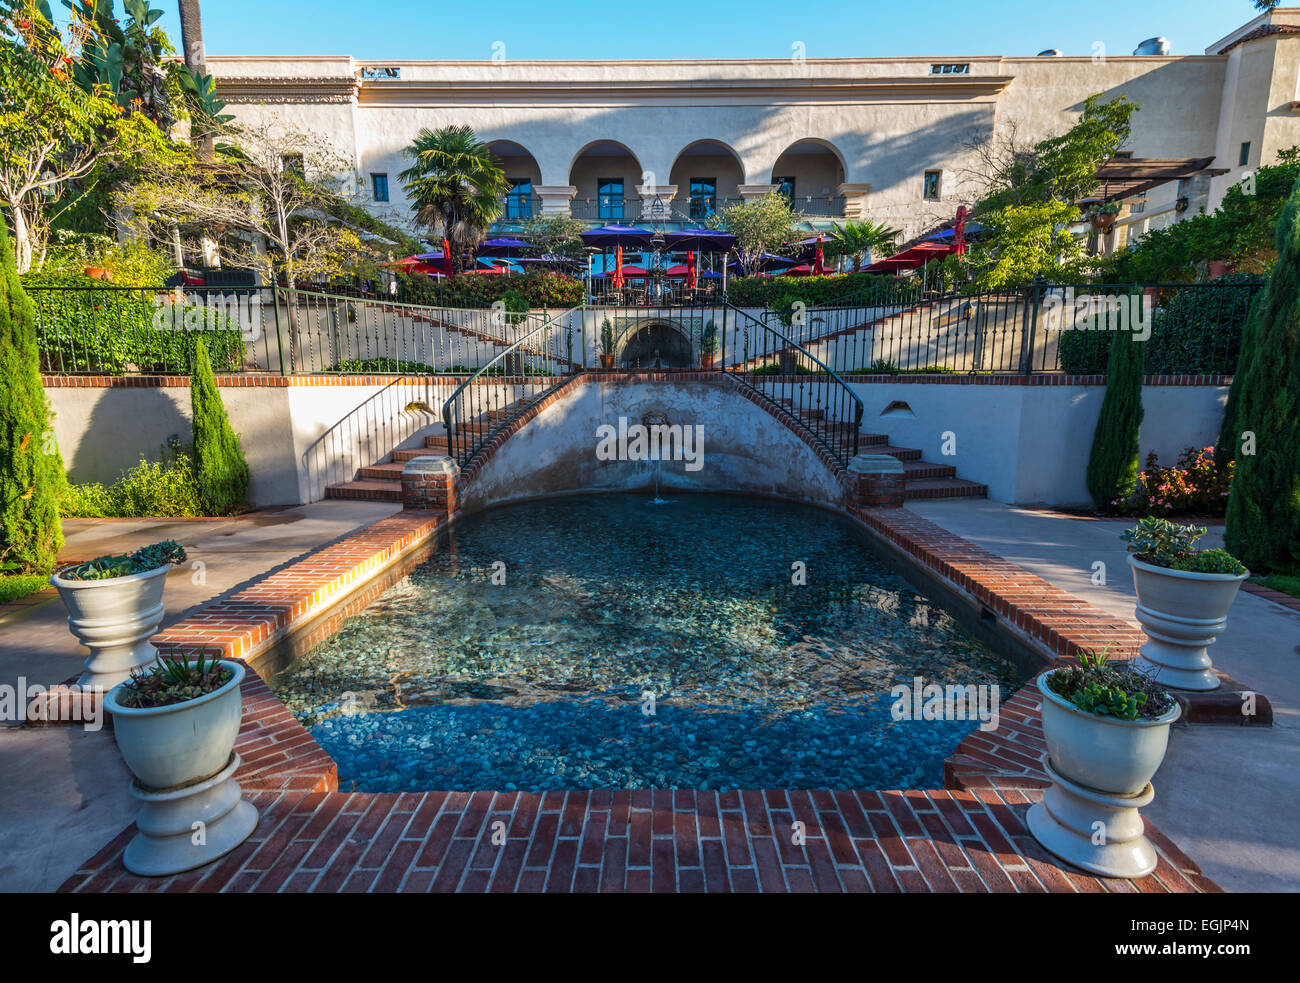 Brunnen im Casa del Rey Moro Garten. Balboa Park, San Diego, Kalifornien, Vereinigte Staaten von Amerika. Stockfoto